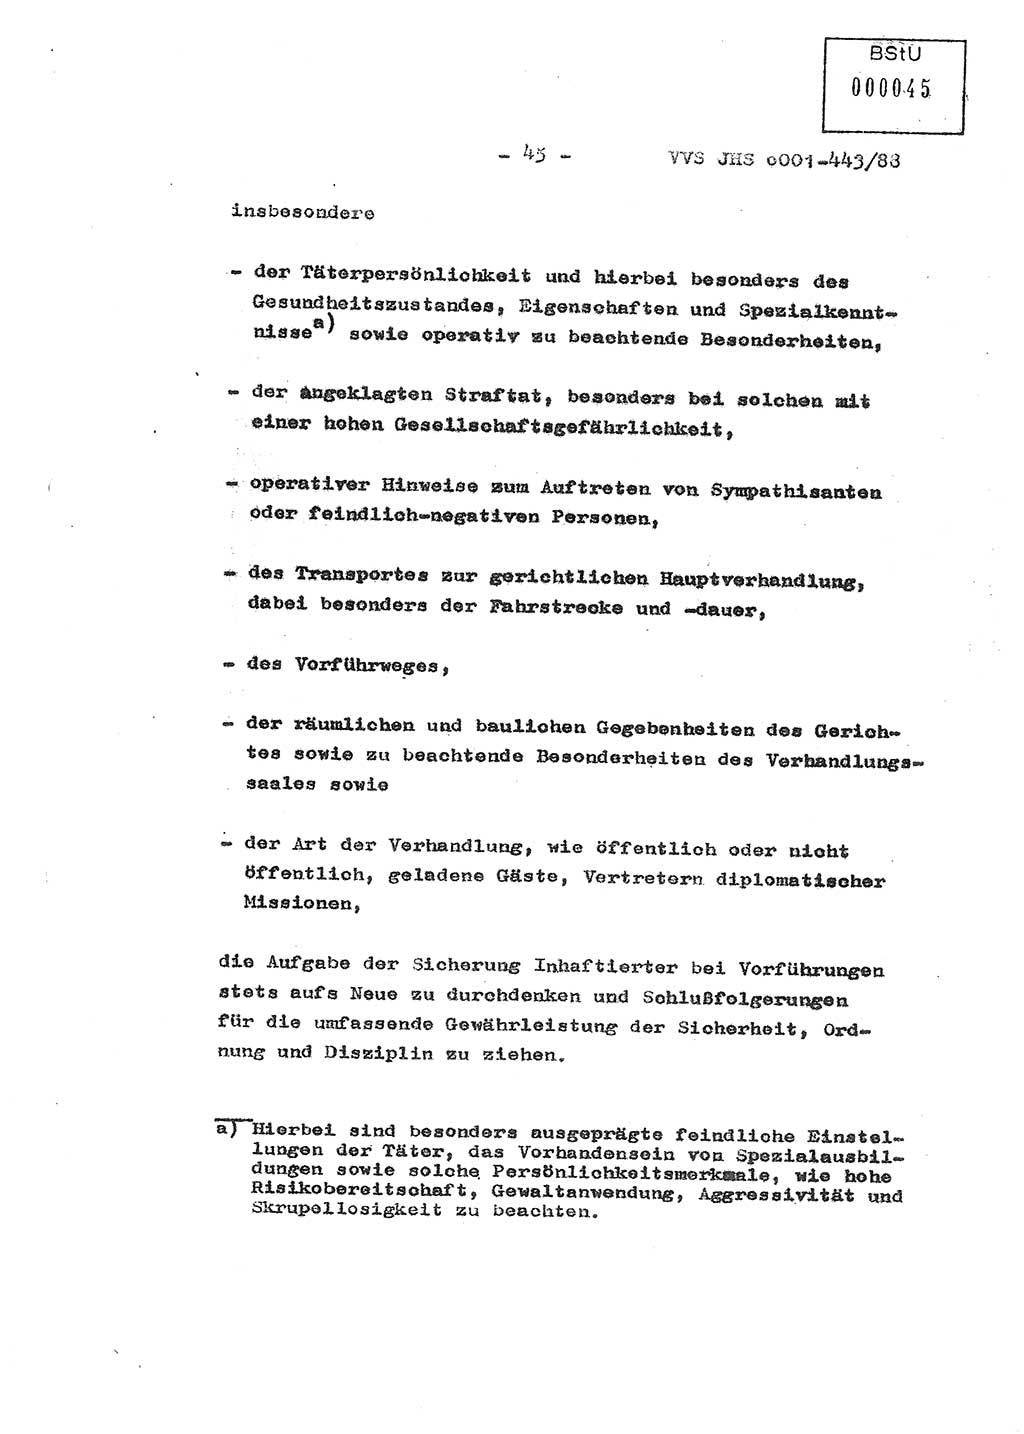 Diplomarbeit Hauptmann Michael Rast (Abt. ⅩⅣ), Major Bernd Rahaus (Abt. ⅩⅣ), Ministerium für Staatssicherheit (MfS) [Deutsche Demokratische Republik (DDR)], Juristische Hochschule (JHS), Vertrauliche Verschlußsache (VVS) o001-443/88, Potsdam 1988, Seite 45 (Dipl.-Arb. MfS DDR JHS VVS o001-443/88 1988, S. 45)